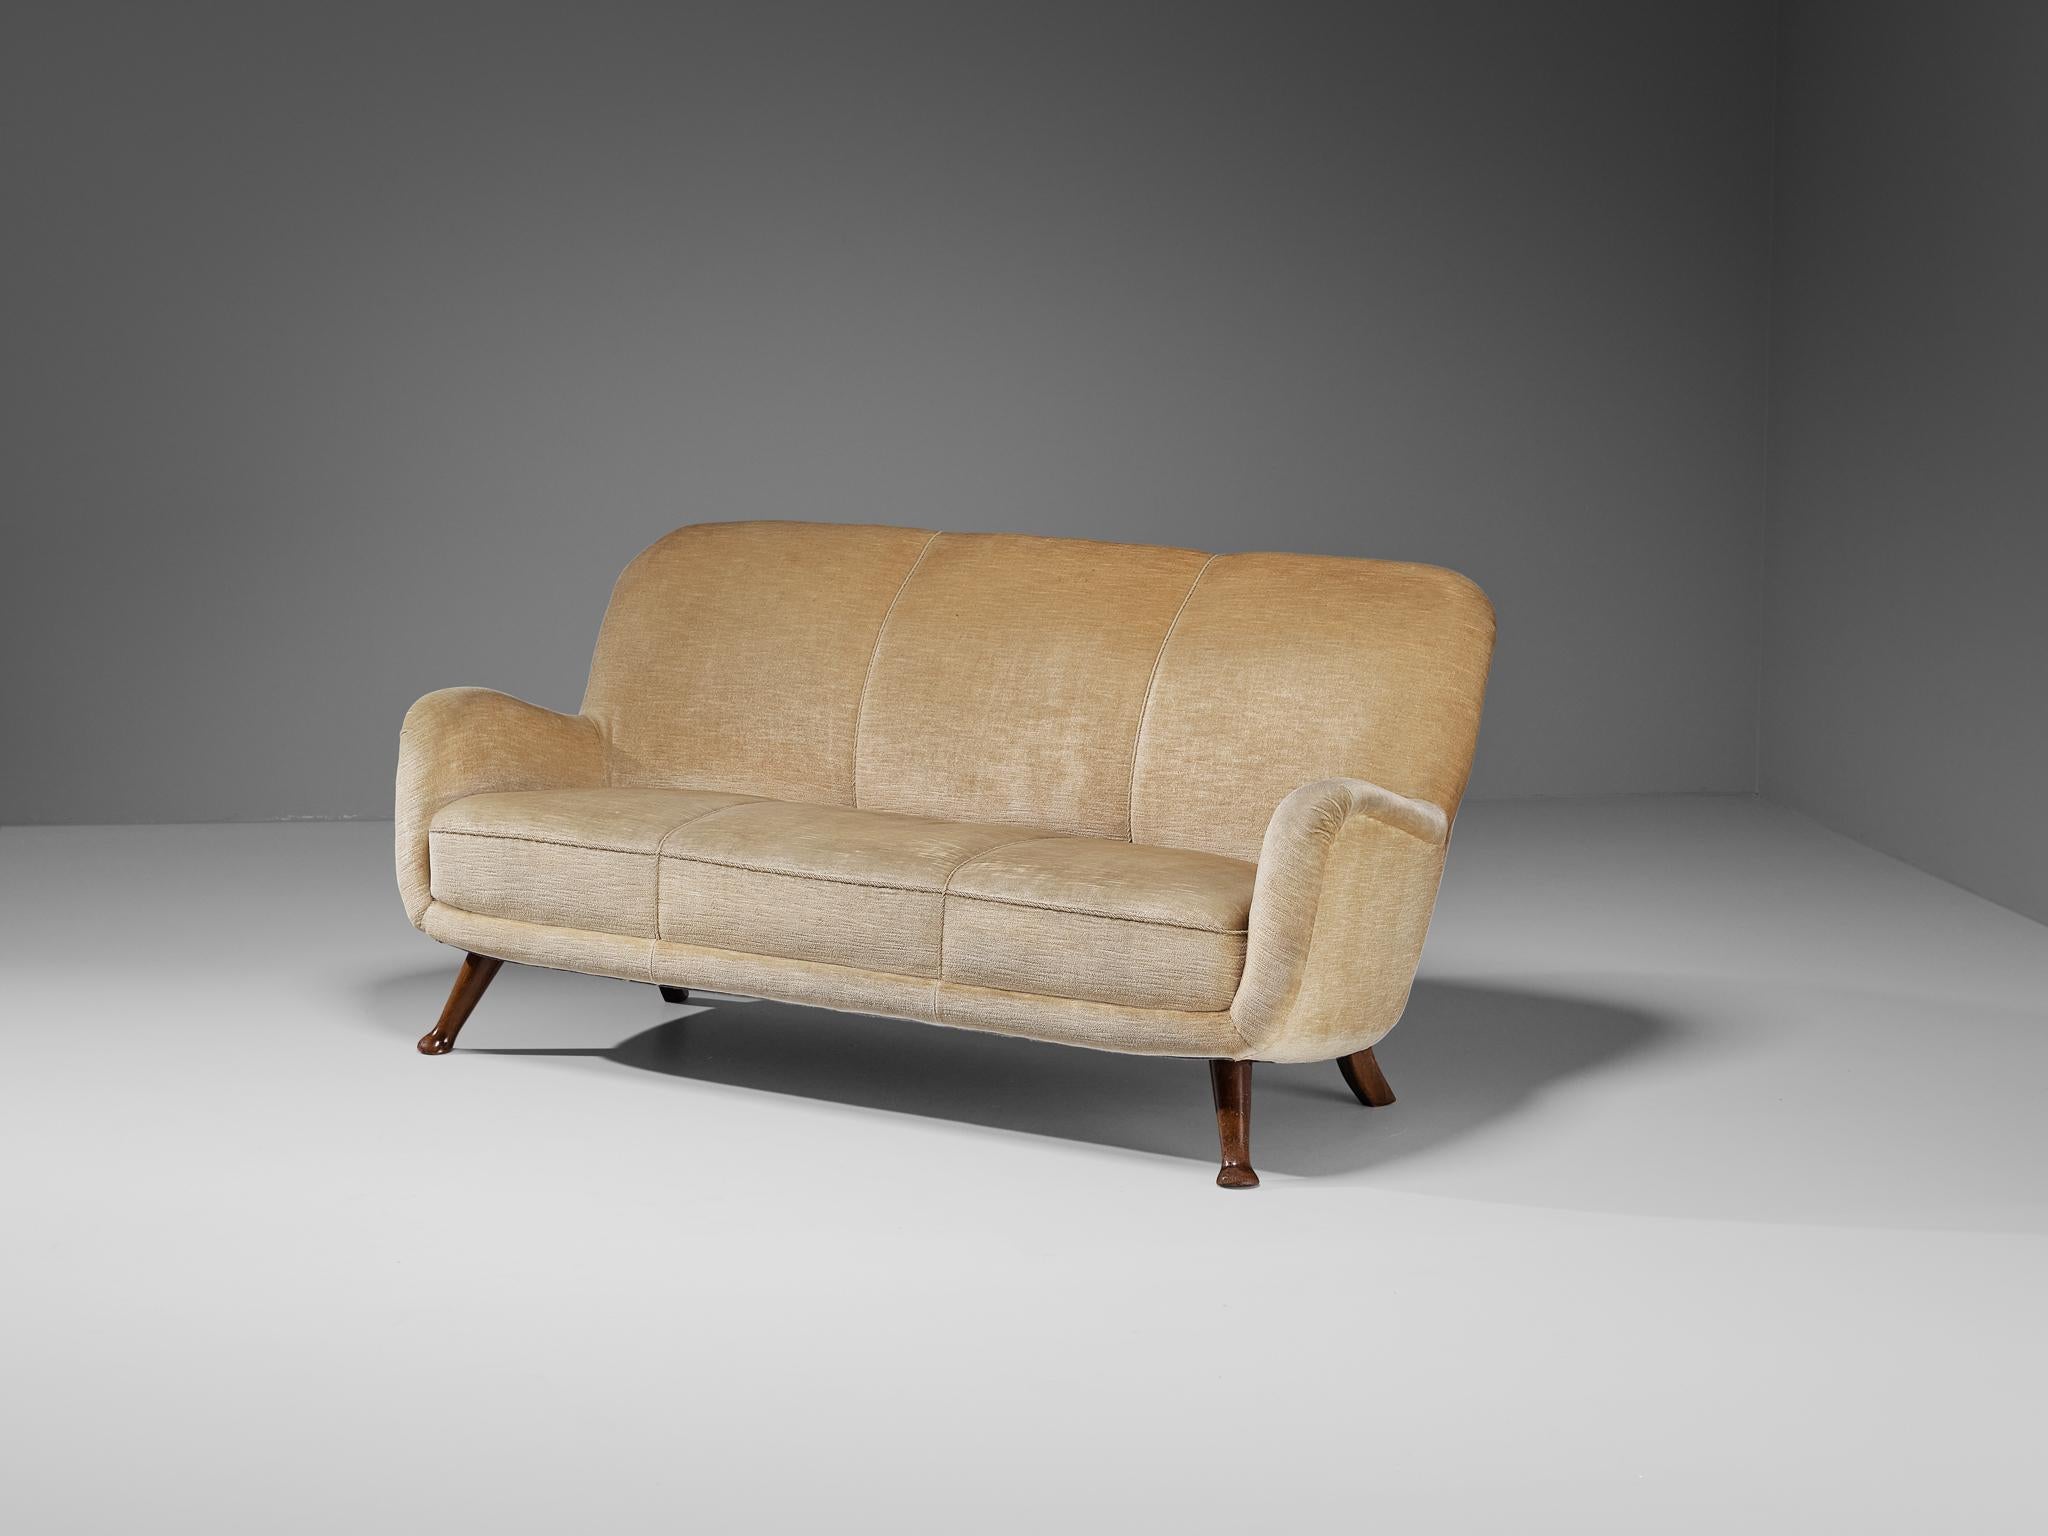 Berga Mobler, canapé, hêtre, laine, Danemark, années 1940.

Ce canapé audacieux et incurvé repose sur une construction solide avec une touche de tendresse due à la texture douce du tissu en laine. L'ensemble de la coquille est légèrement incliné